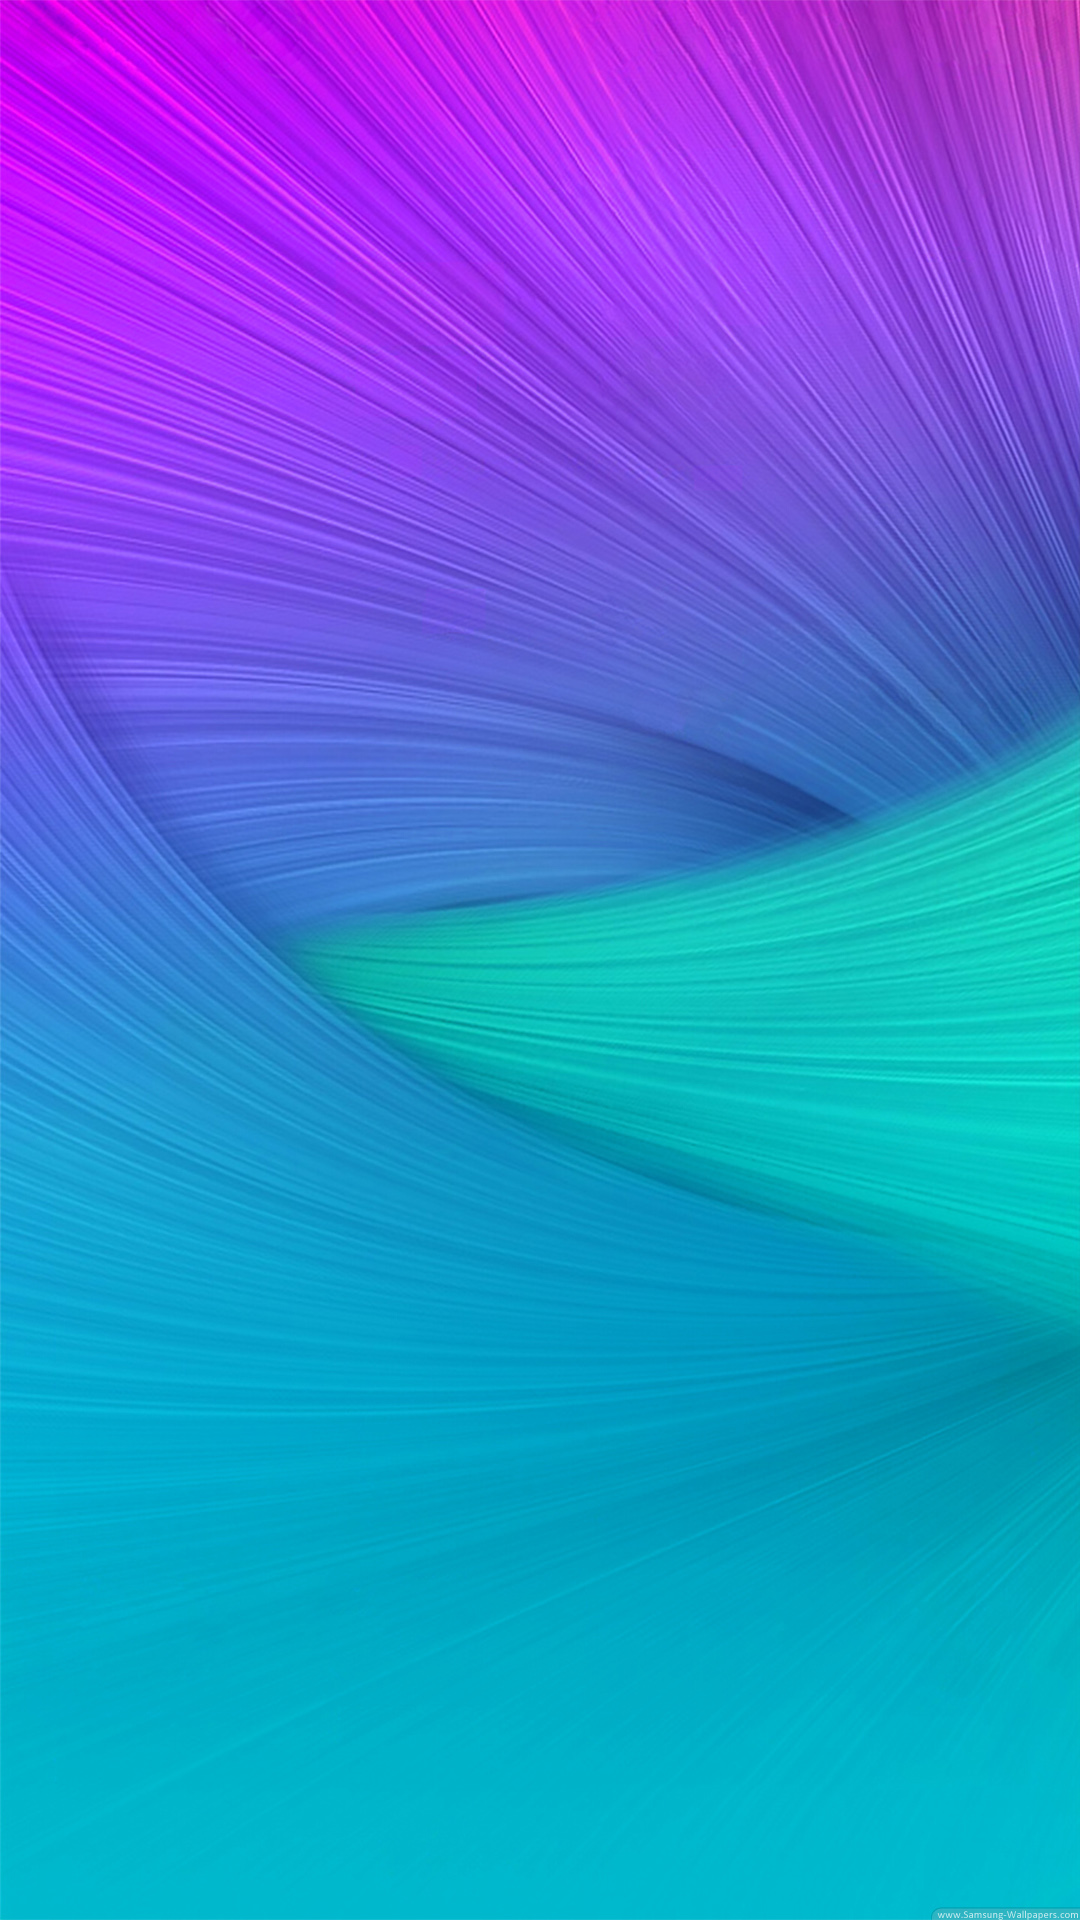 sfondo per smartphone hd,blu,verde,viola,viola,acqua